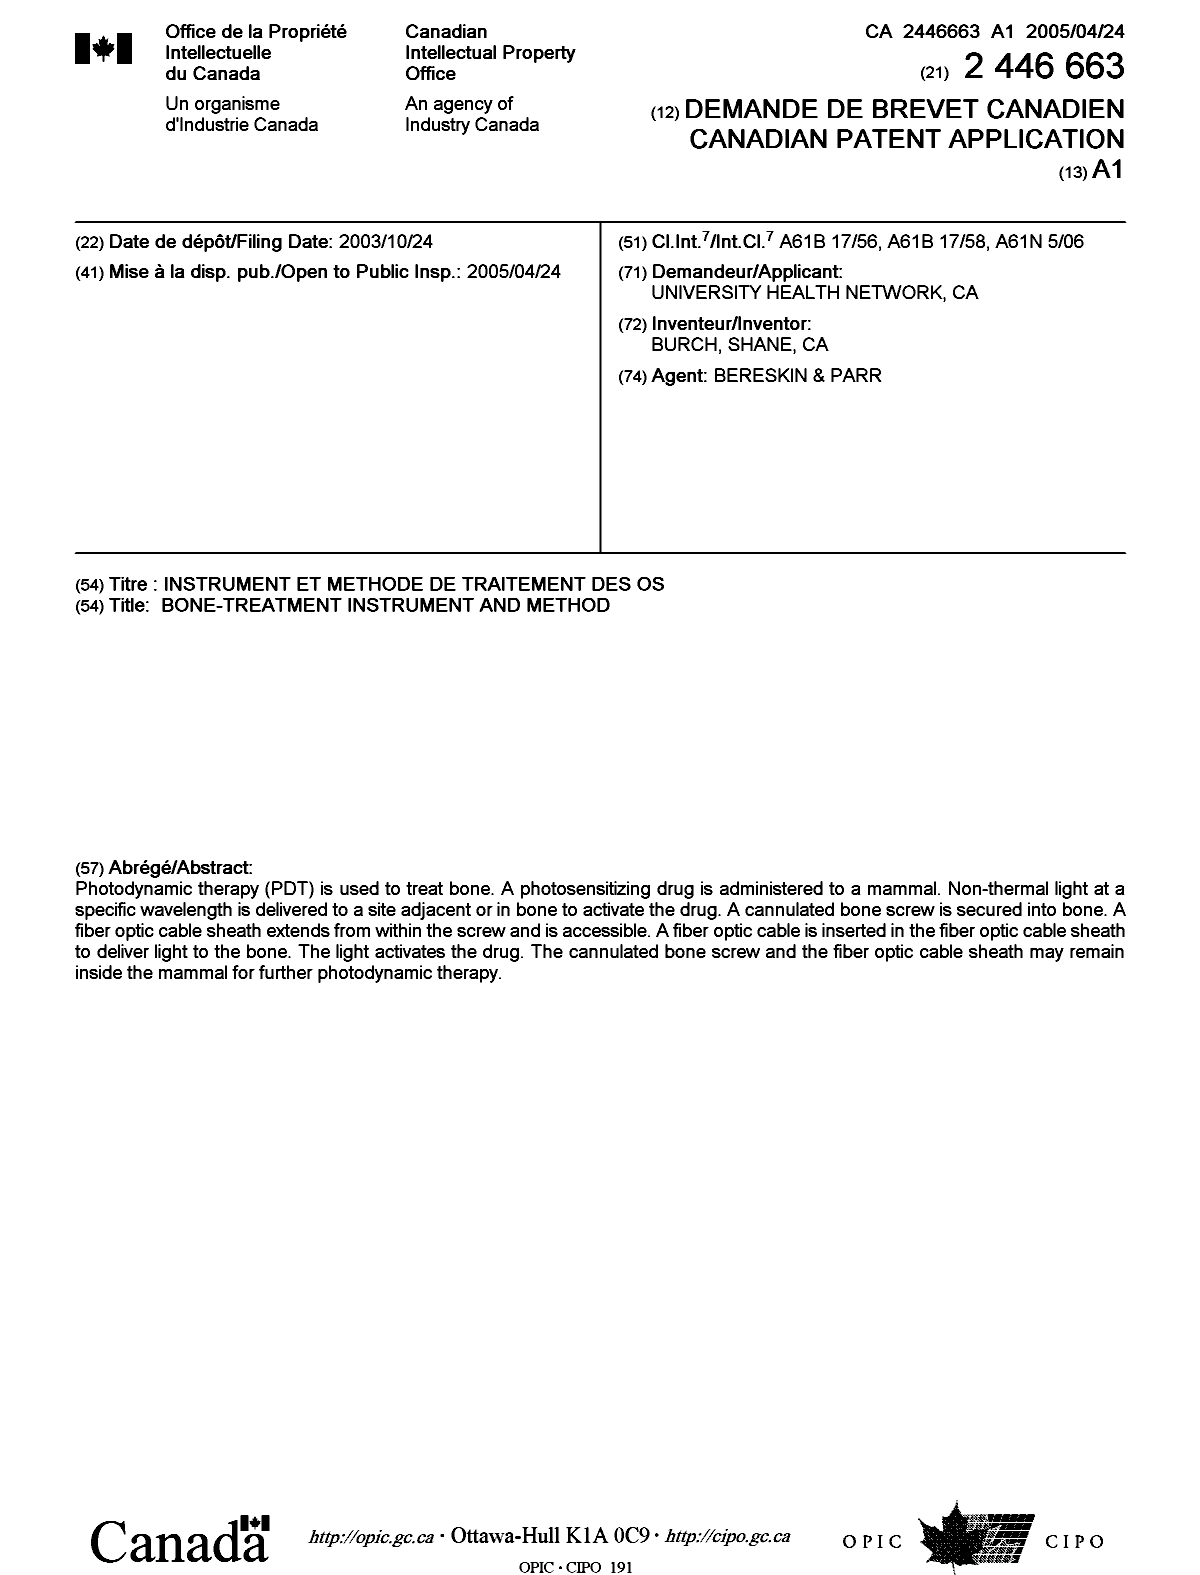 Document de brevet canadien 2446663. Page couverture 20050407. Image 1 de 1